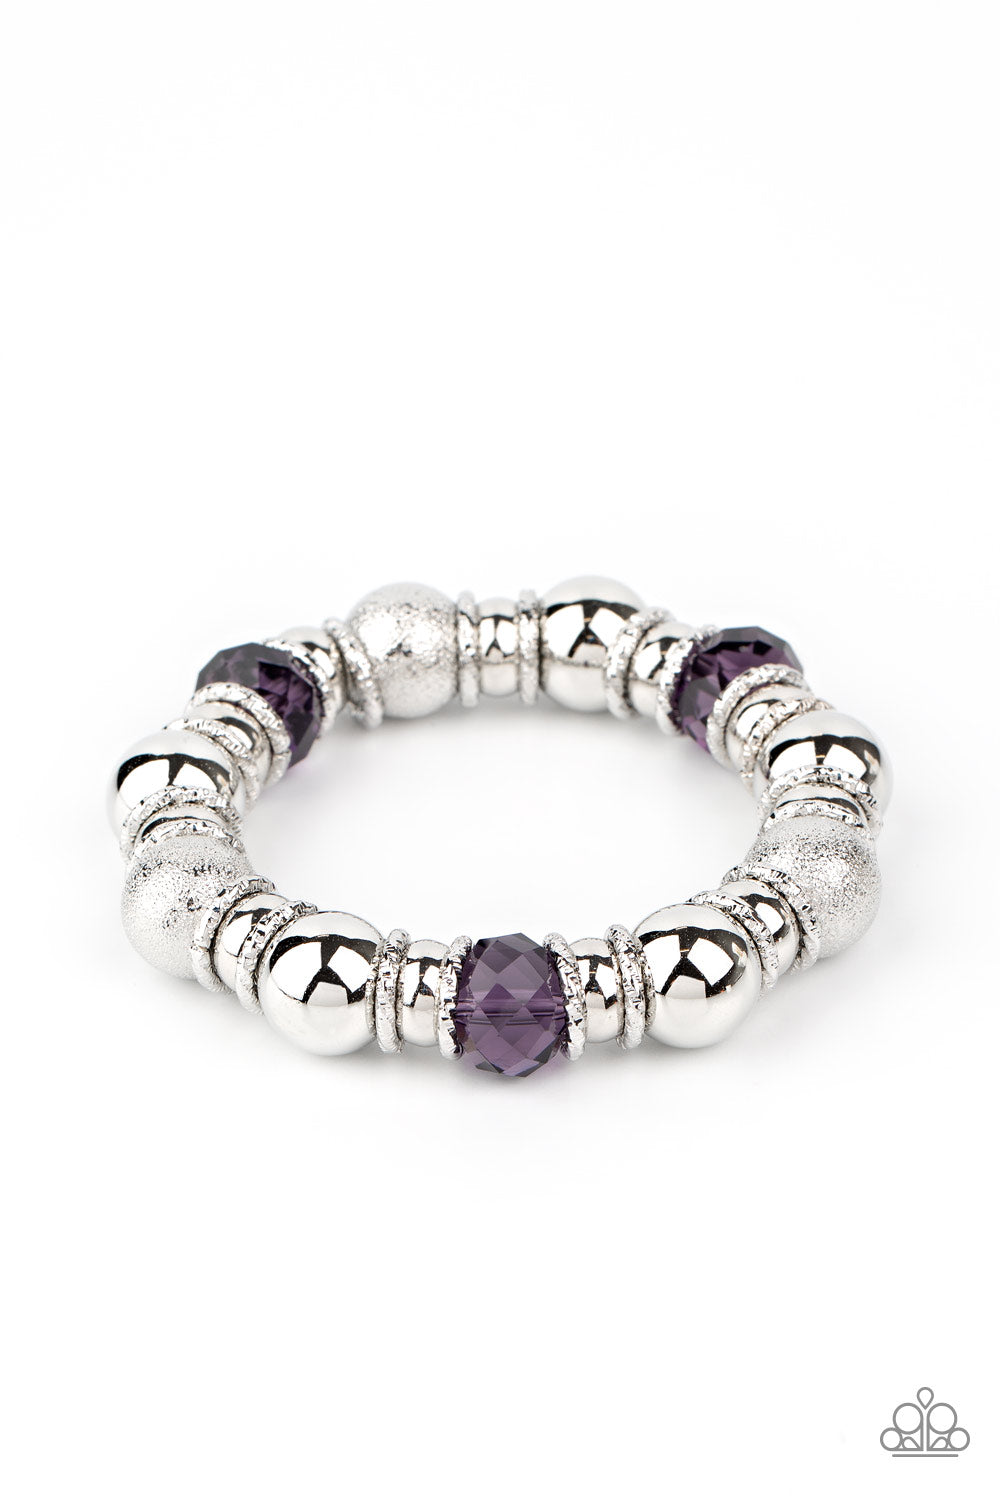 Take Your Best Shot - Purple Bracelet